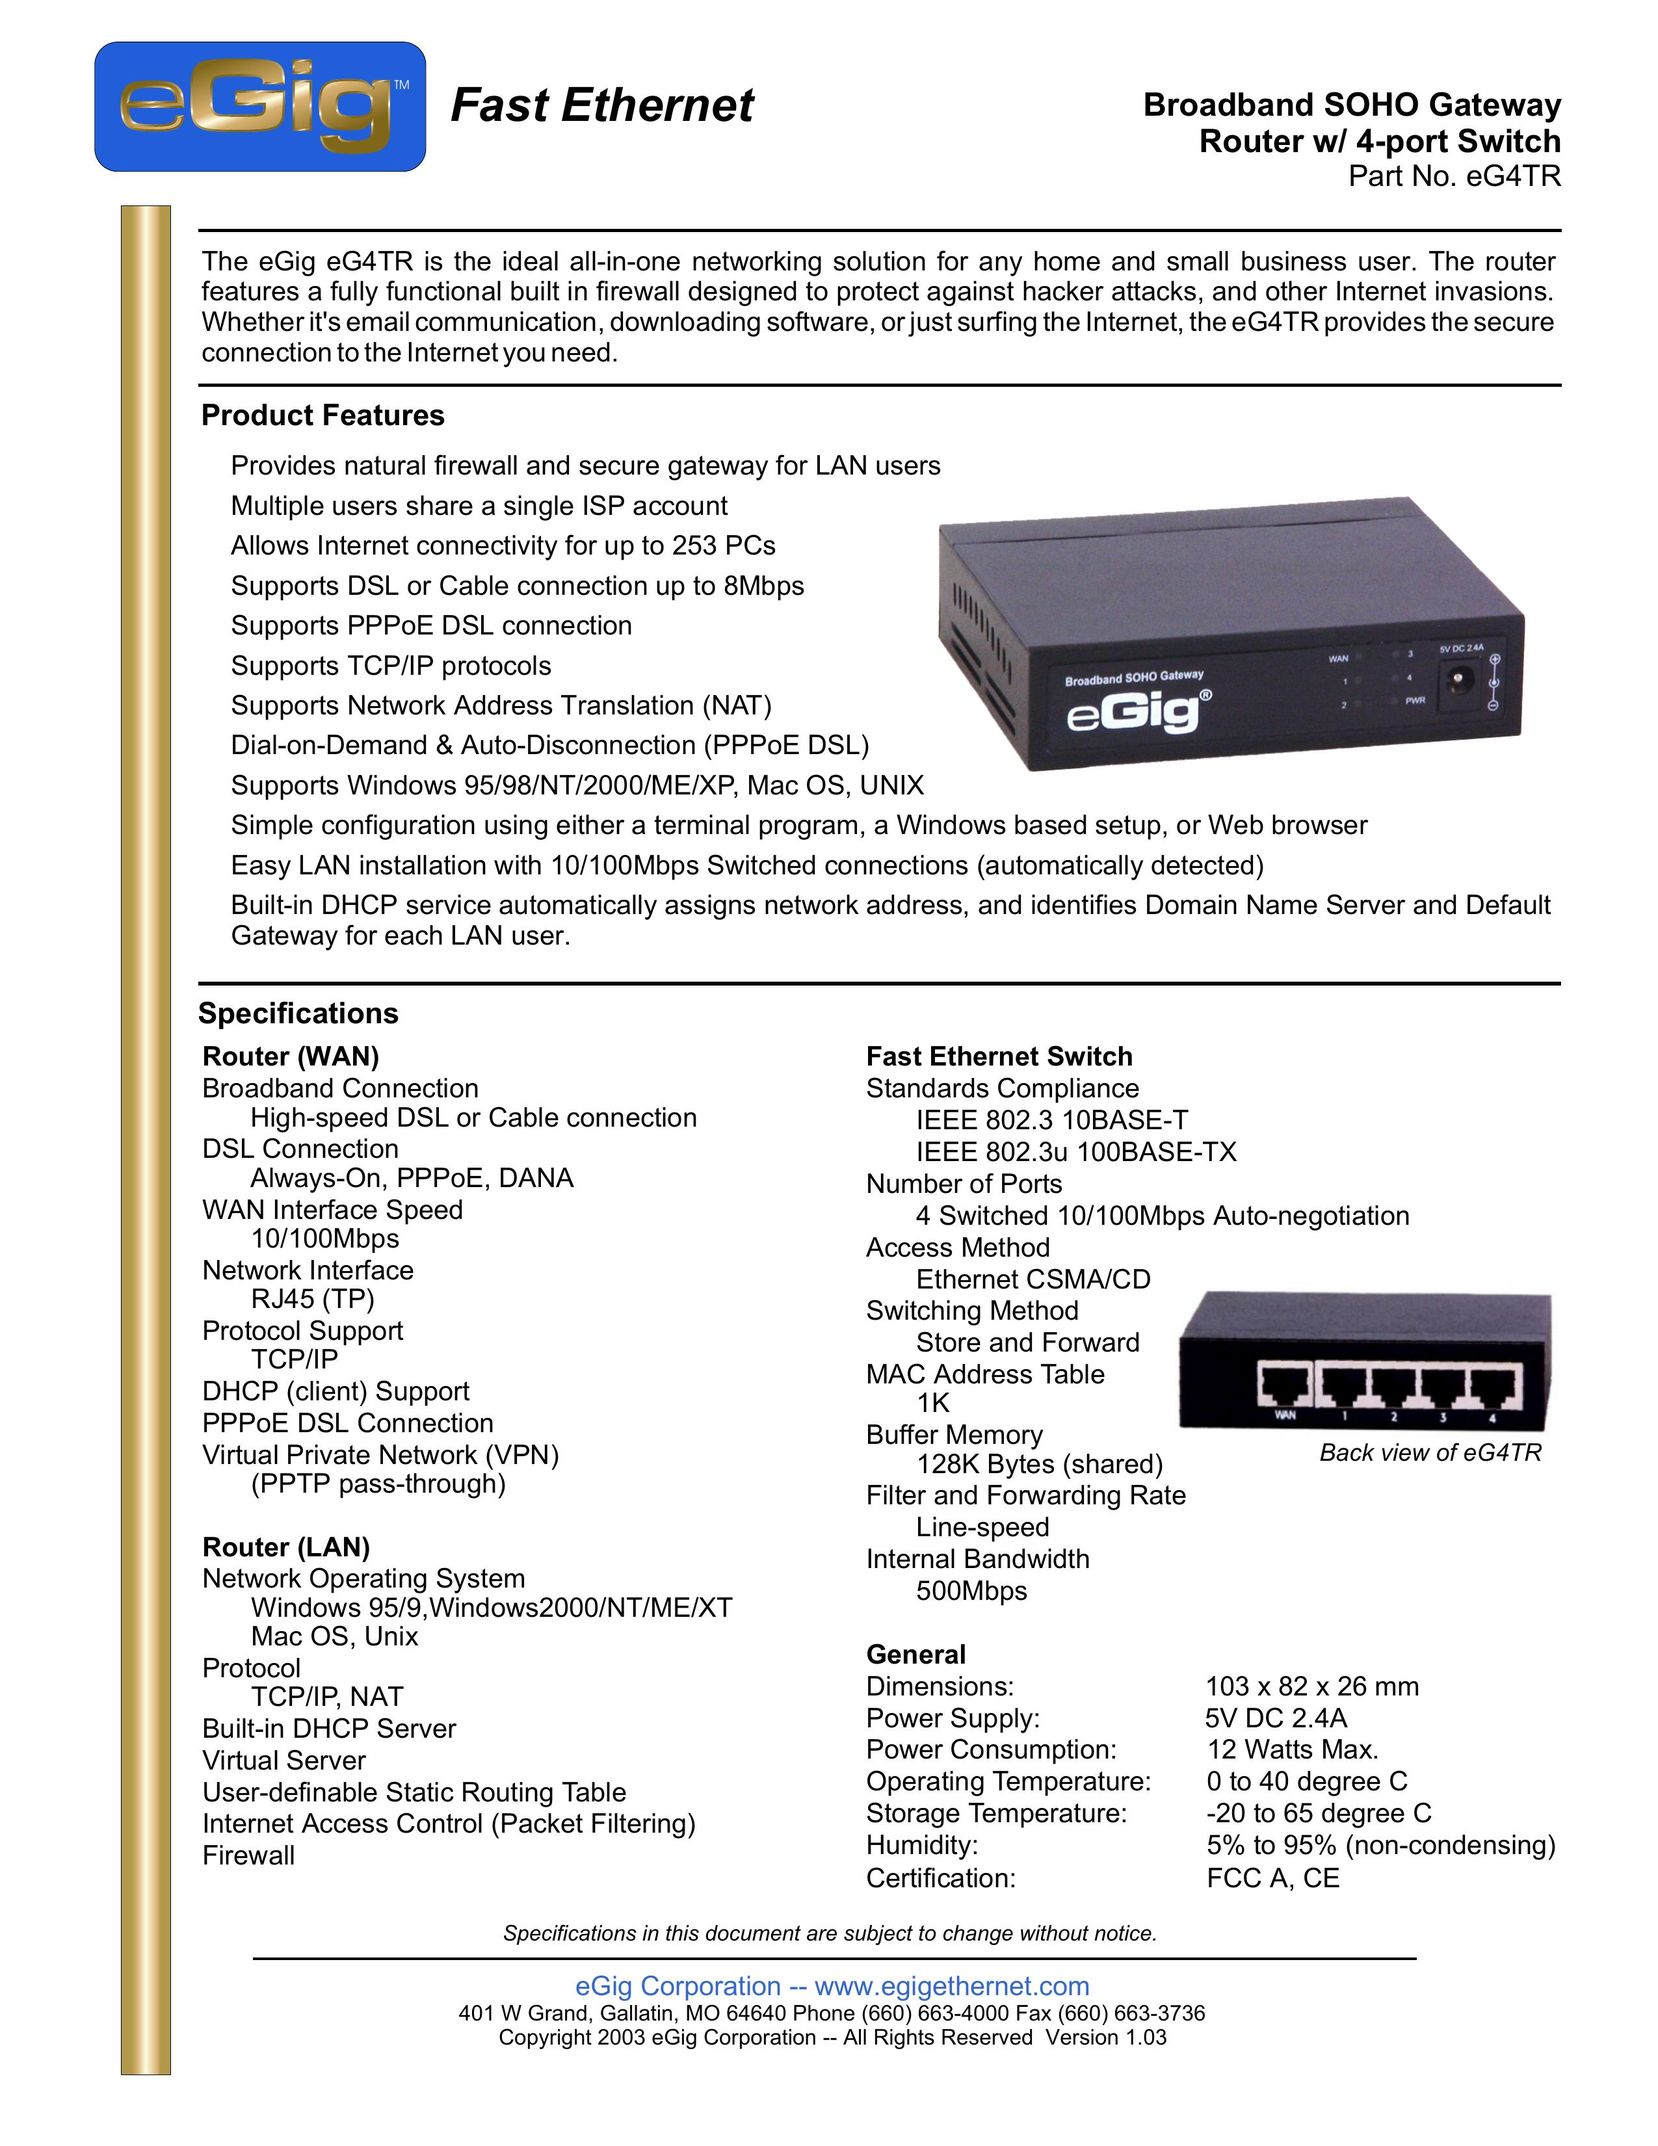 EGig eG4TR Network Router User Manual